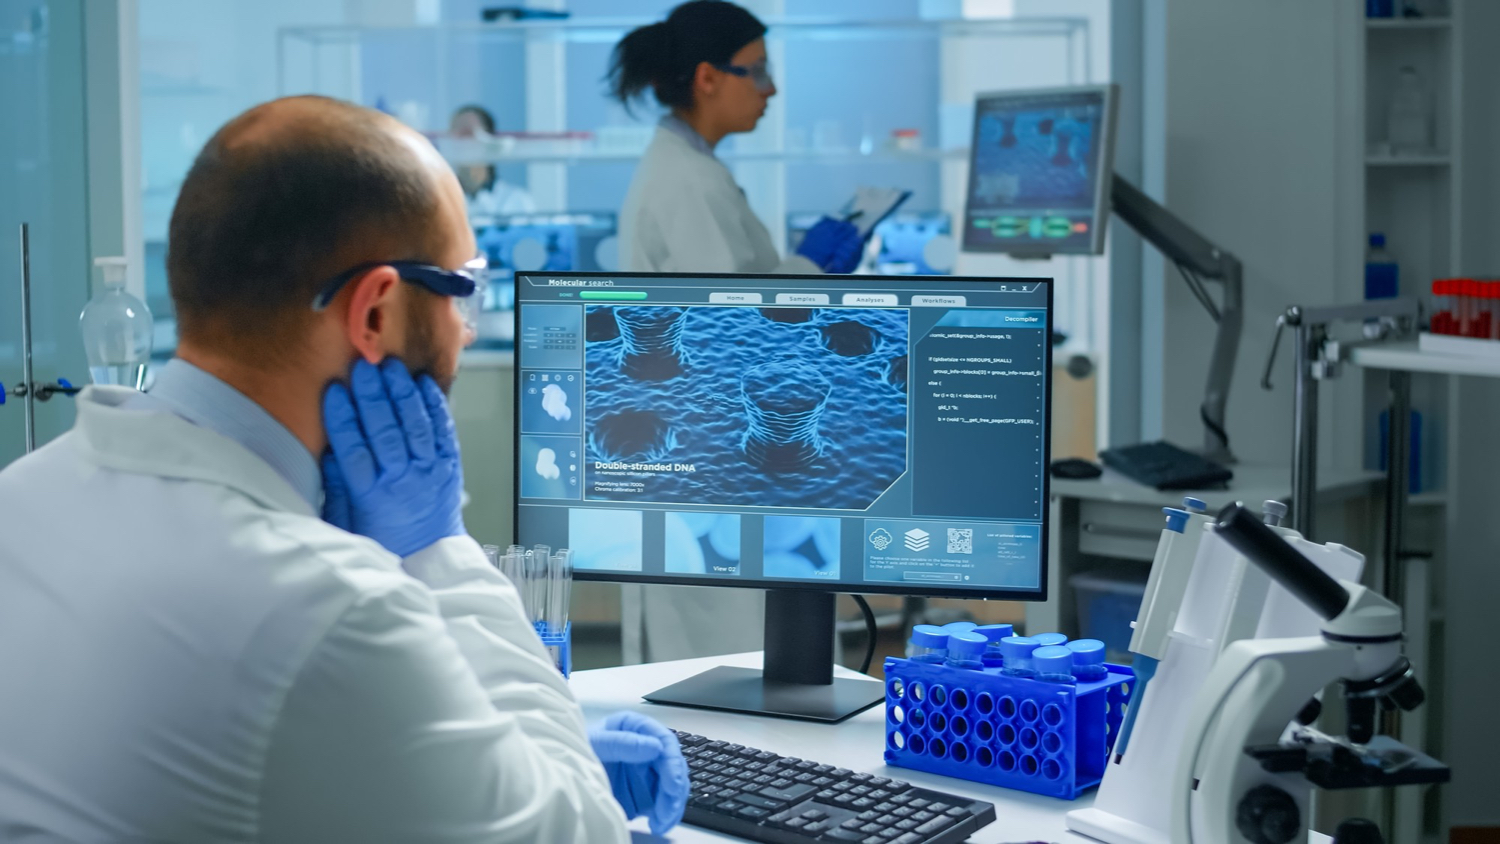 imagem mostra homem trabalhando no computador analisando um trabalho biomédico para ilustrar um artigo sobre engenharia biomédica